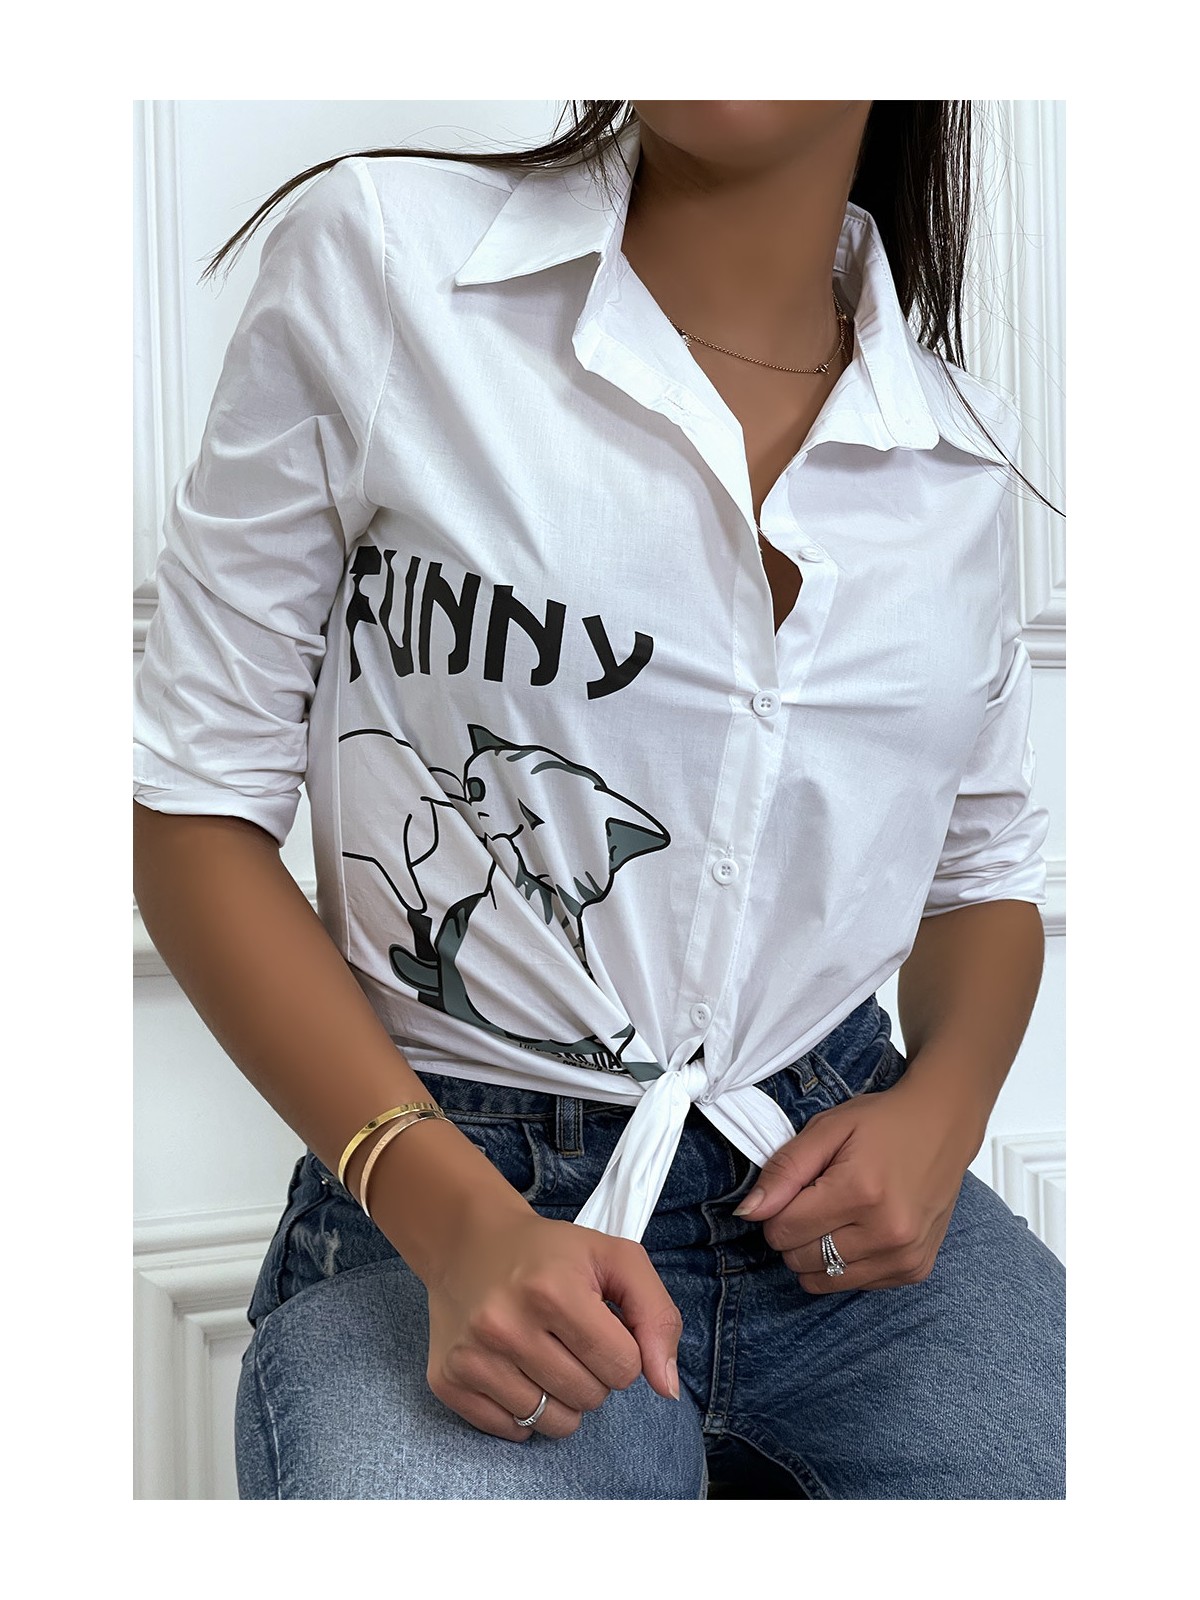 Chemise blanche manches longues avec dessin et inscripstion - 2